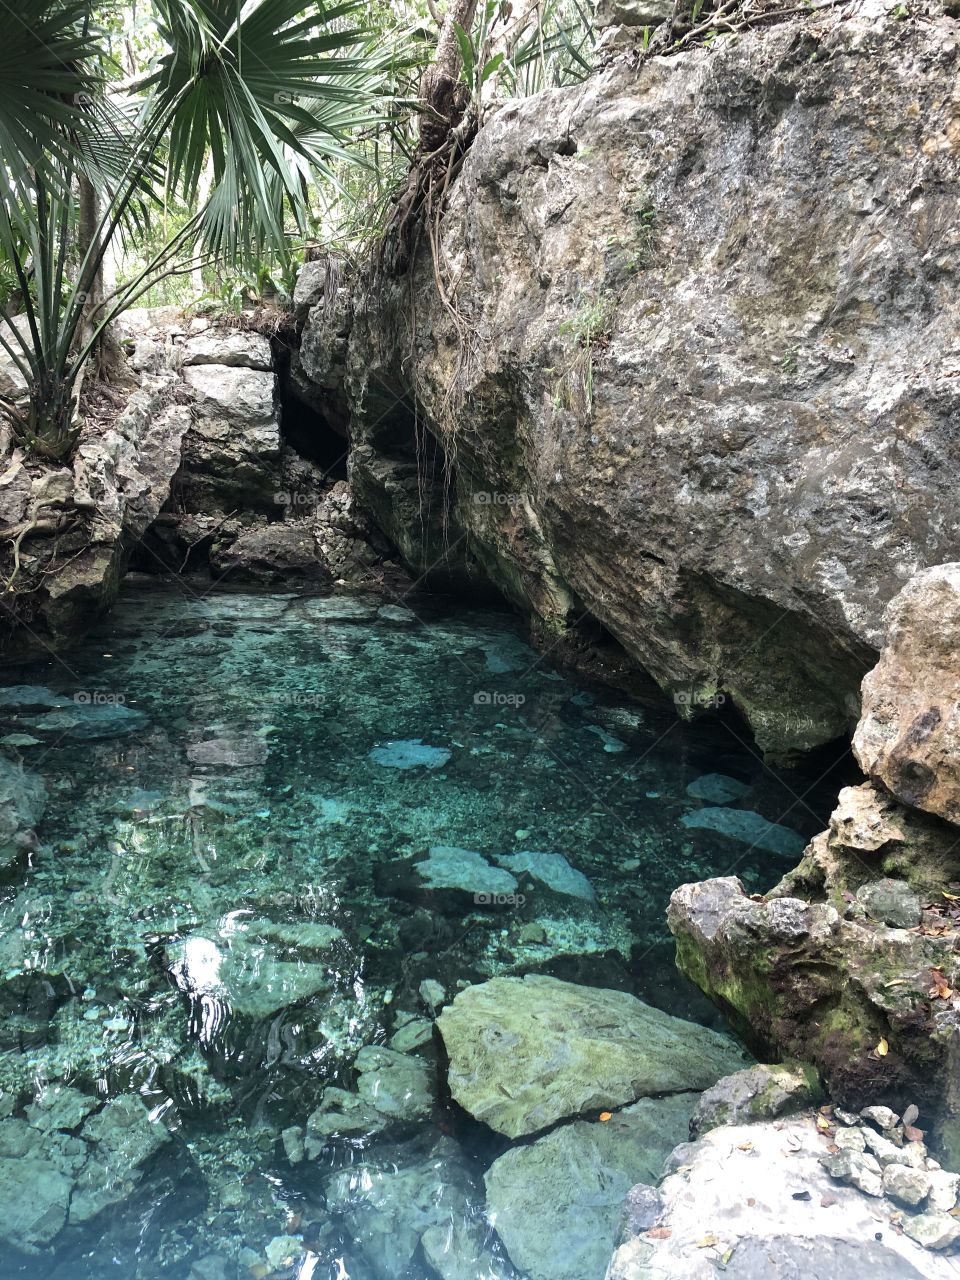 Cenote in Tulum, Mexico.